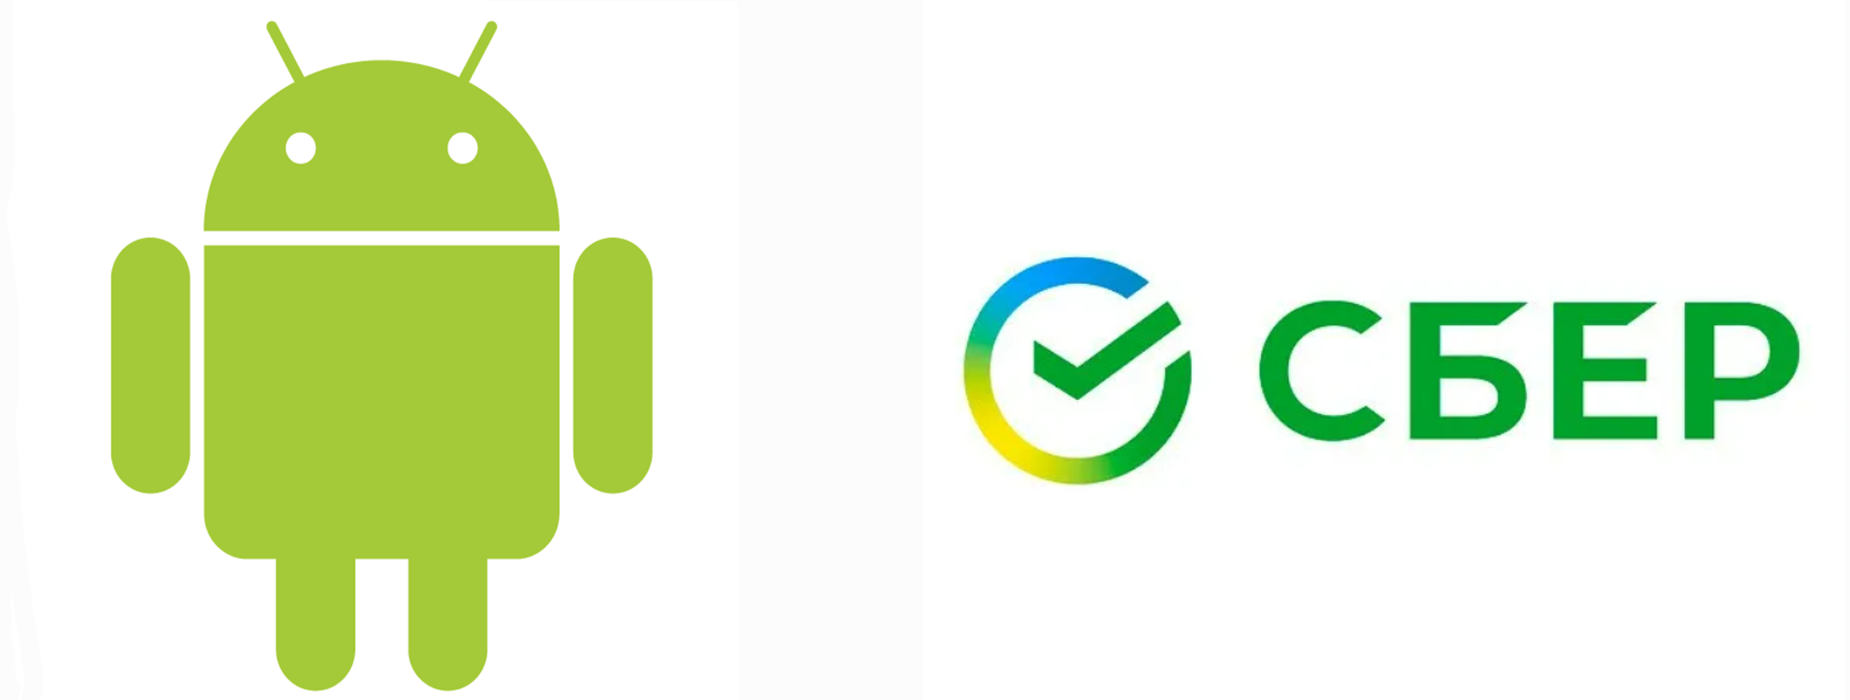 Логотипы операционной системы Android и СберБанка